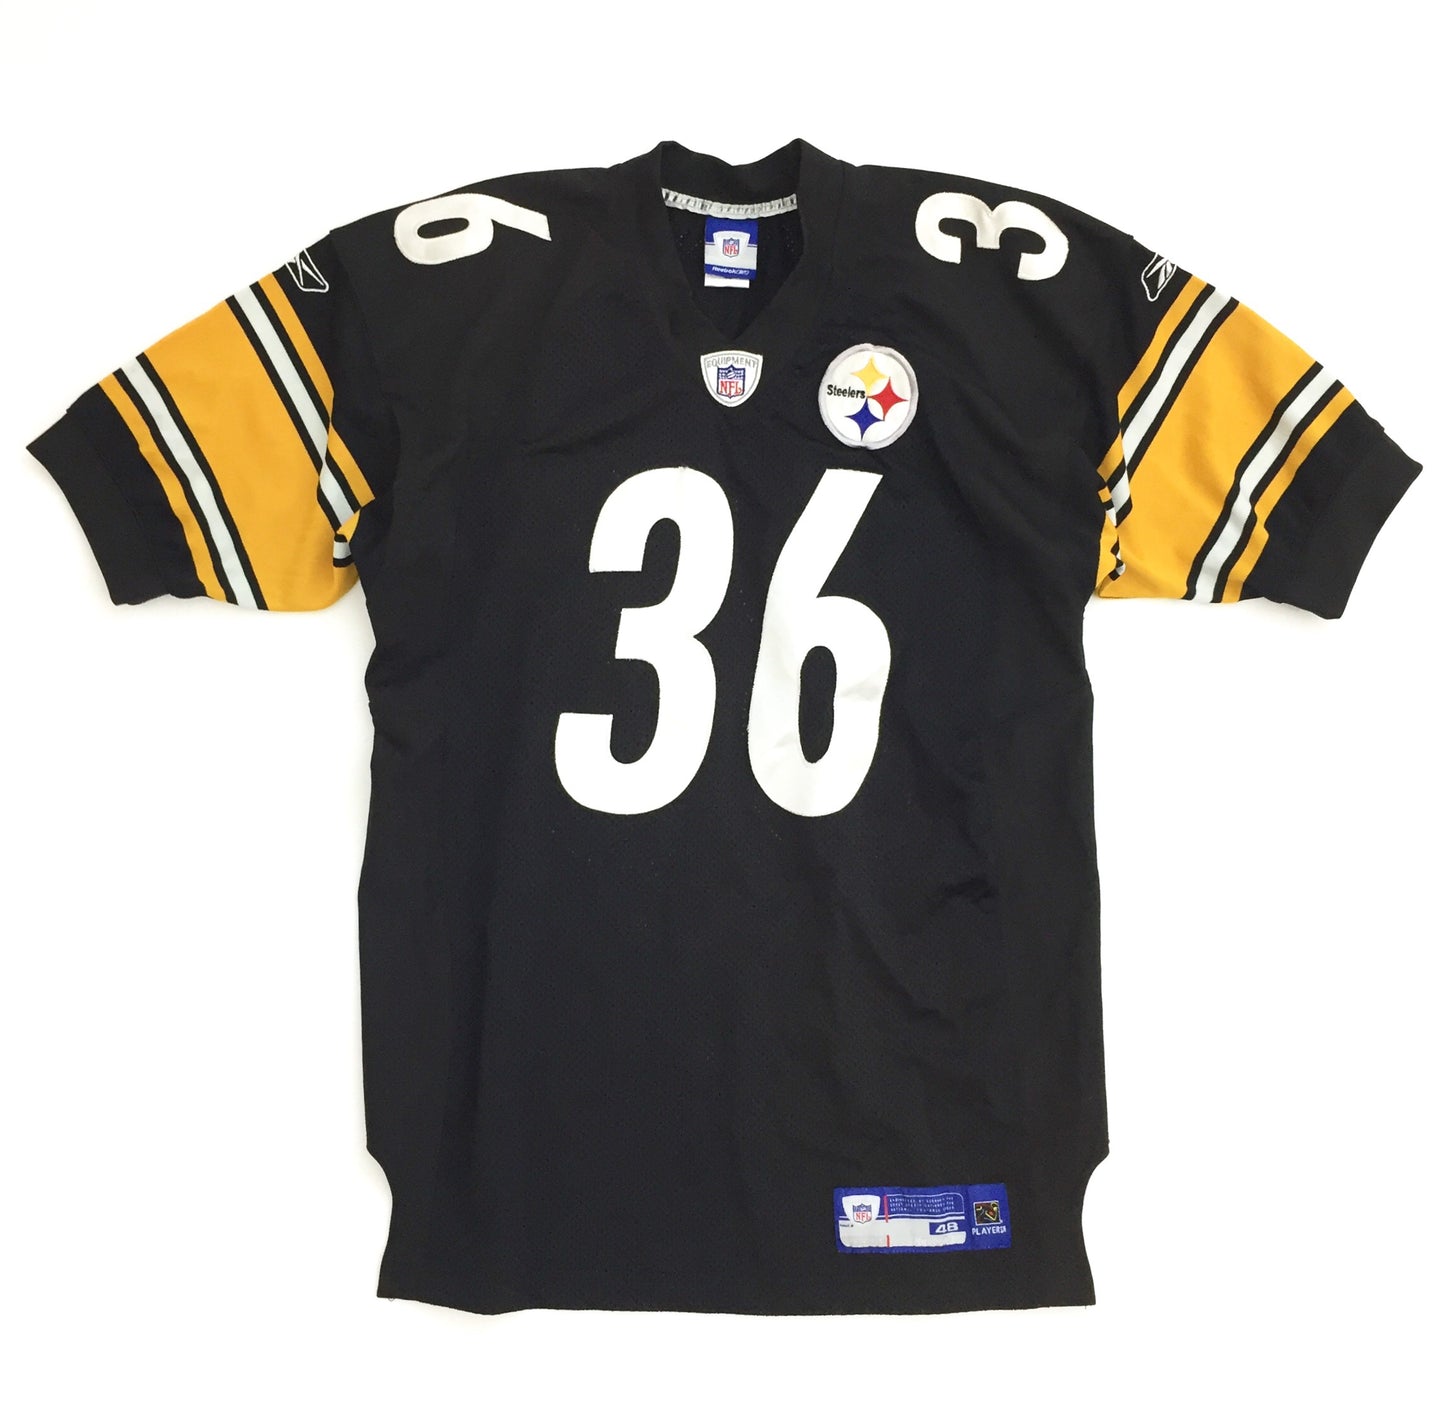 0097 Steelers Bettis NFL Jersey